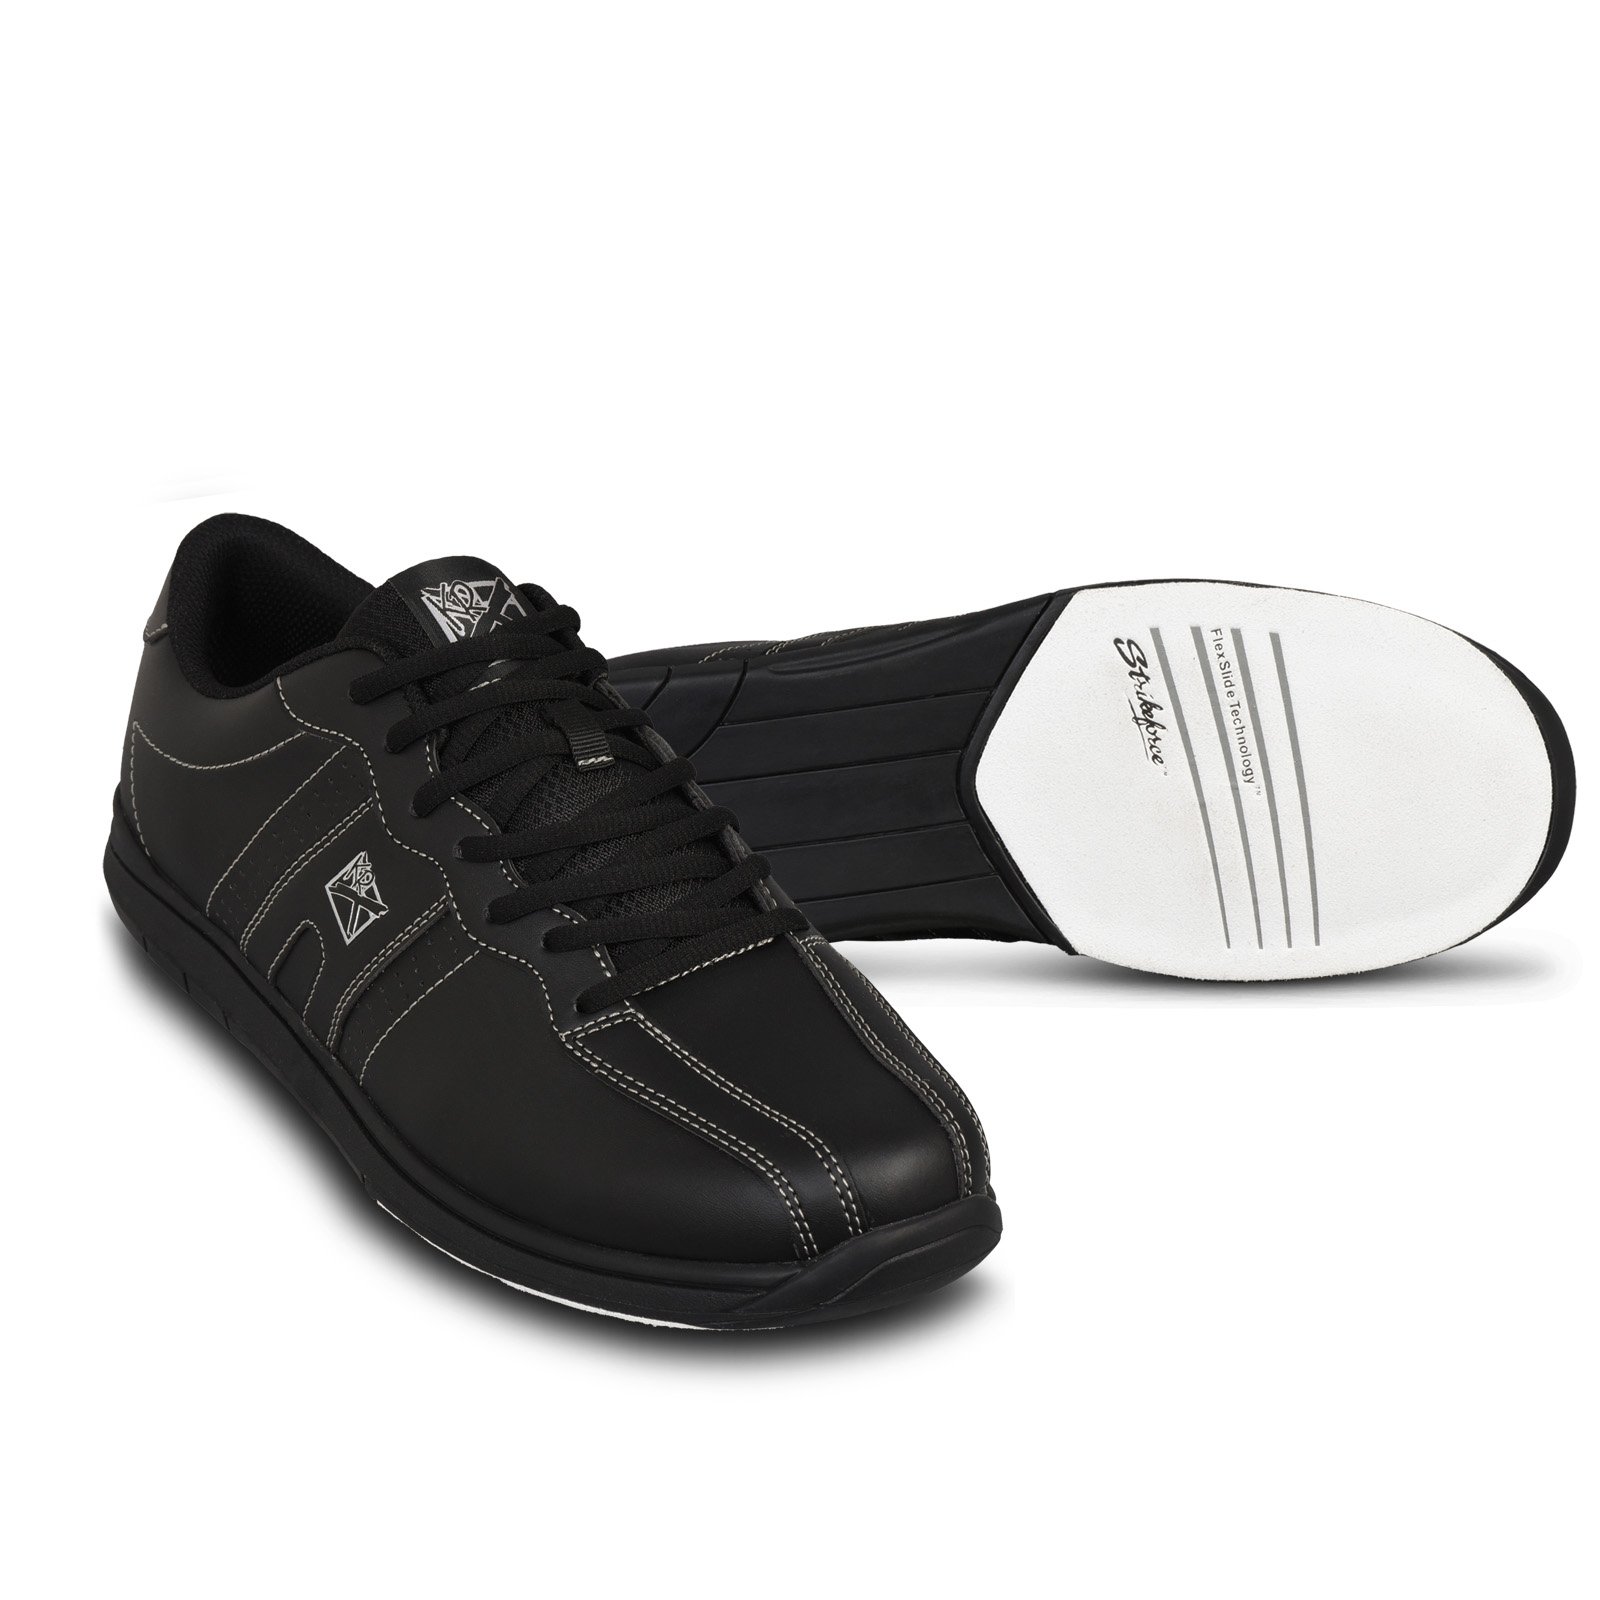 KR Strikeforce Men's O.P.P Bowling Shoes Black